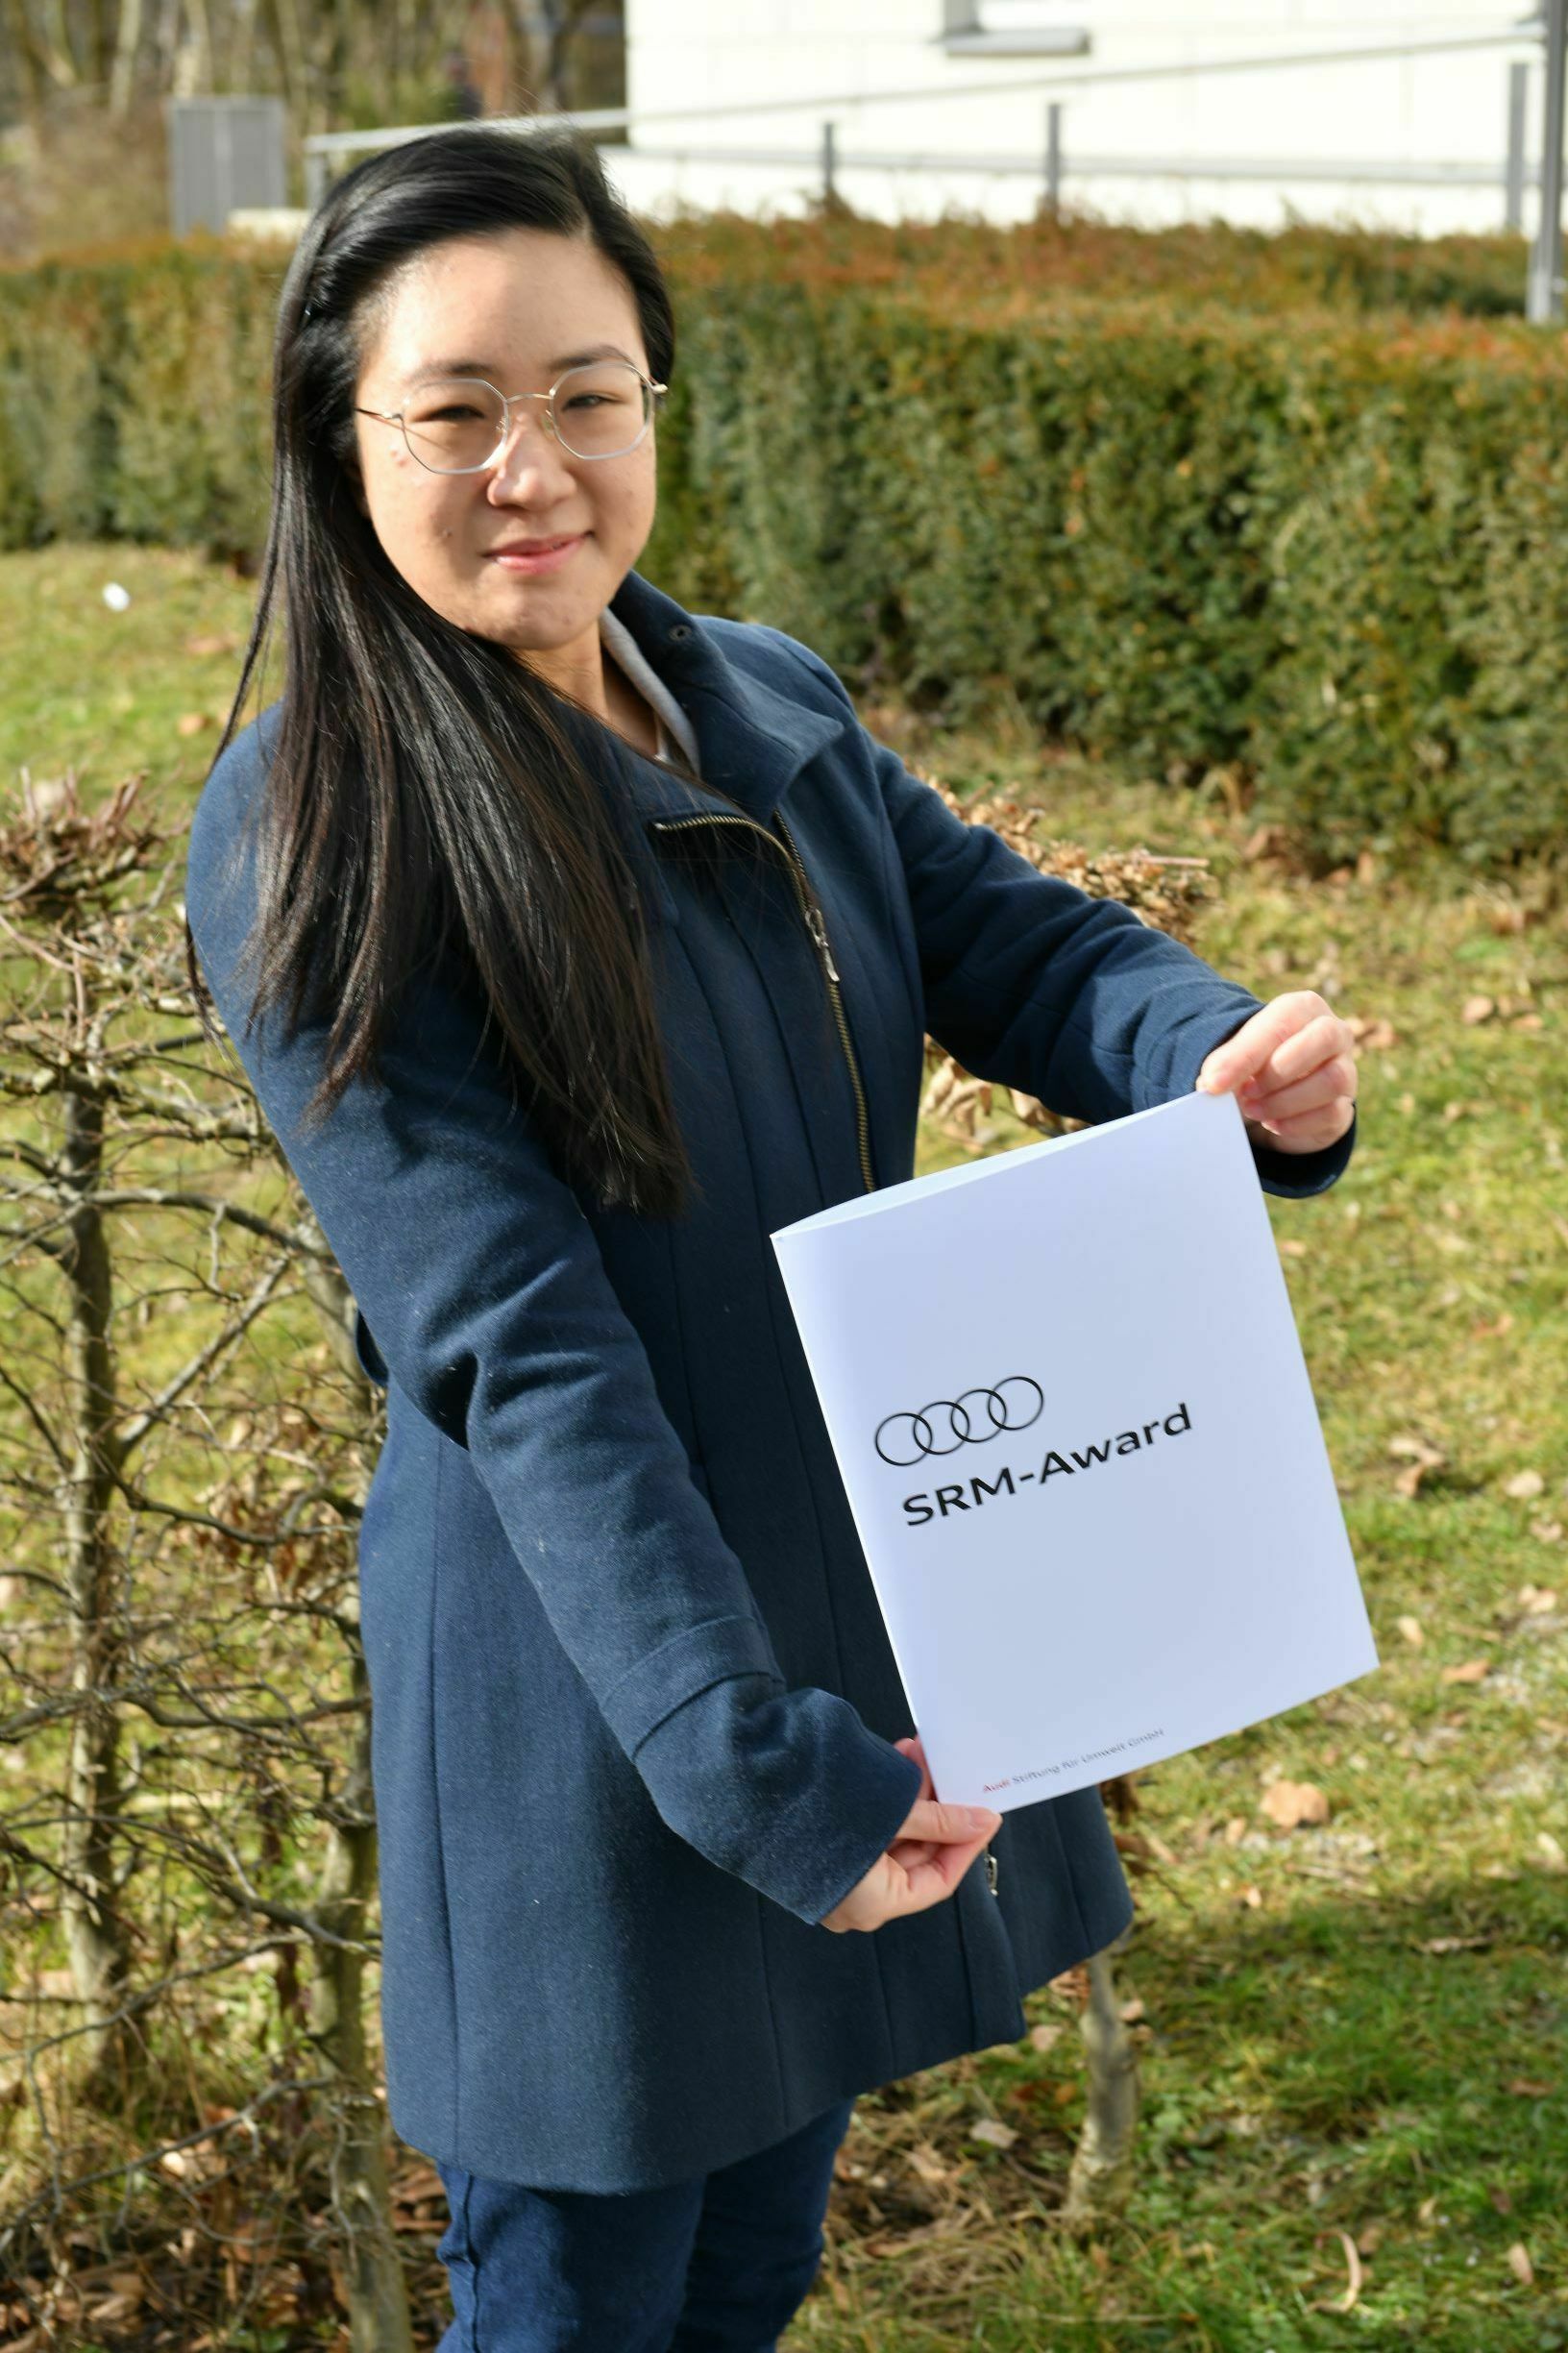 SRM Award winner Tiffany Yu.